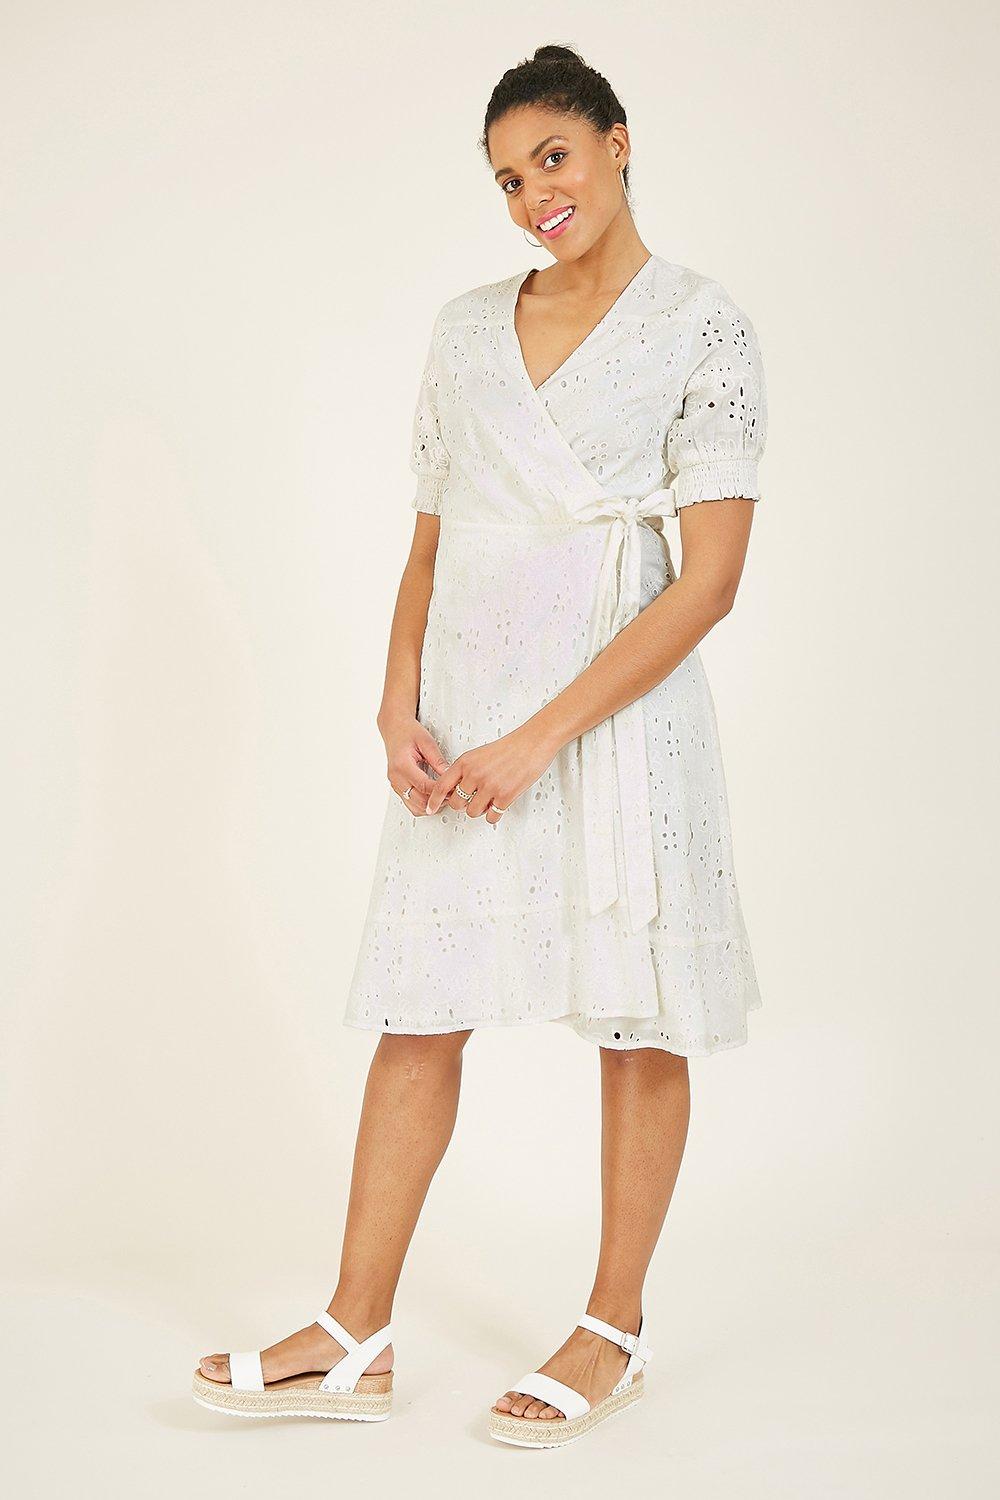 White Dresses for Women | Debenhams